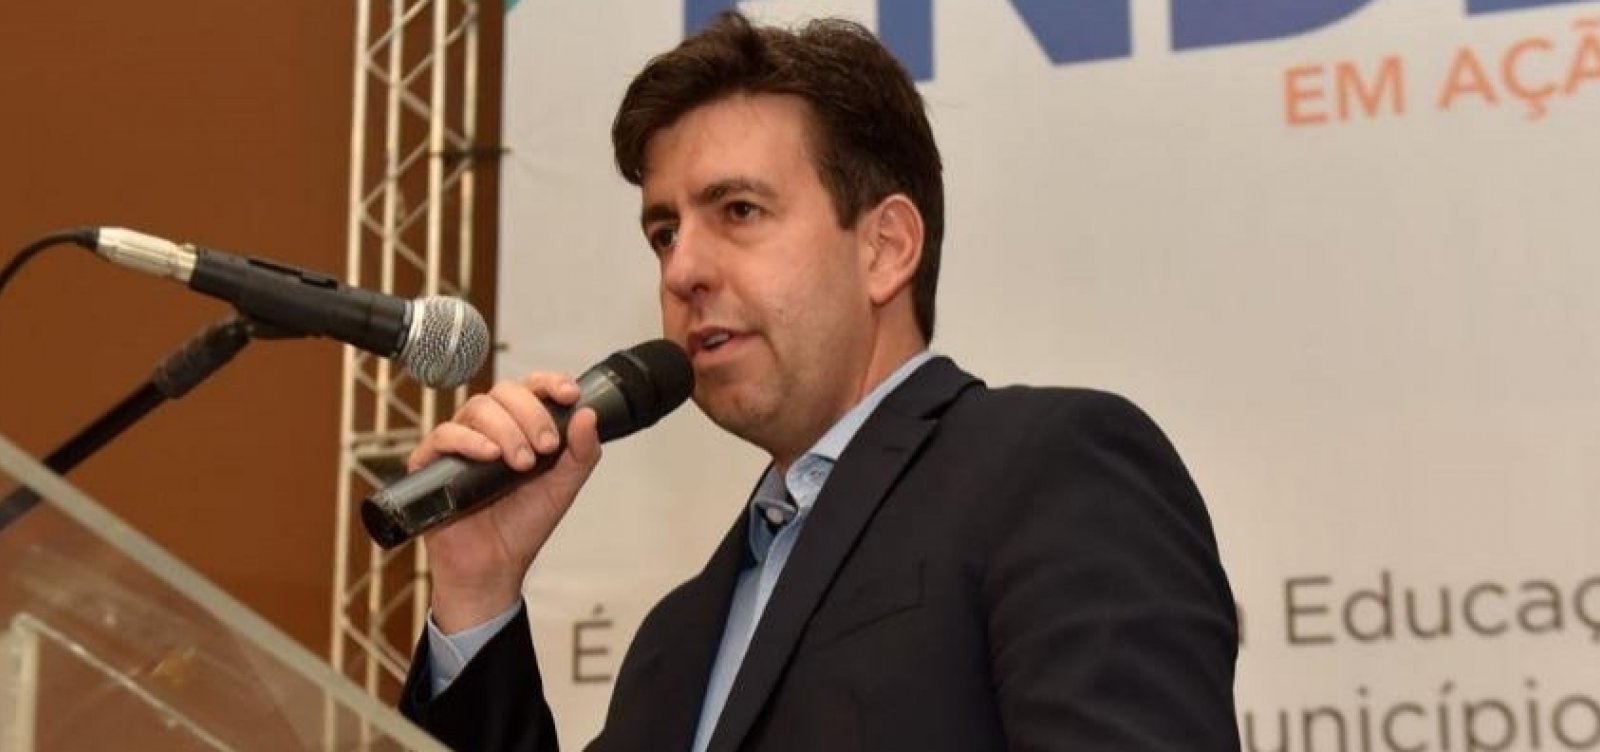 De saída do FNDE, Silvio Pinheiro diz que órgão é ‘de Estado, não de governo’ 